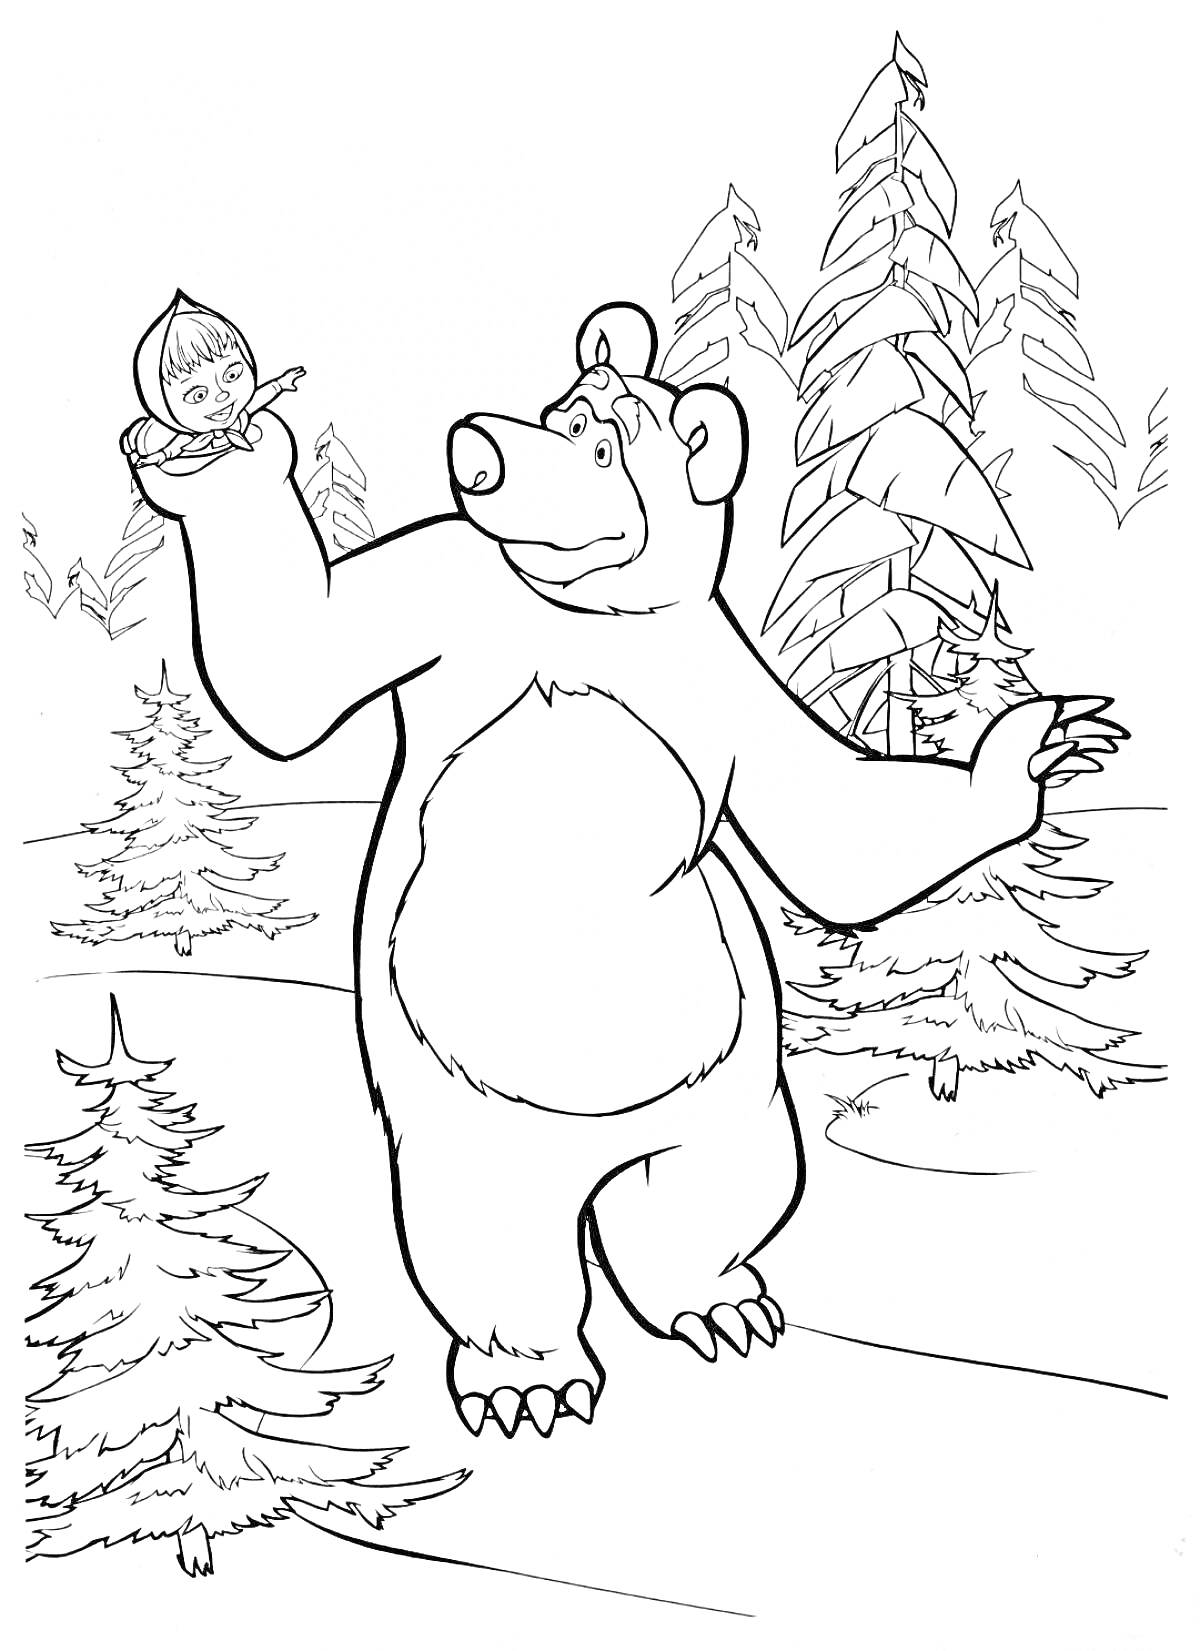 РаскраскаМаша и Медведь в зимнем лесу